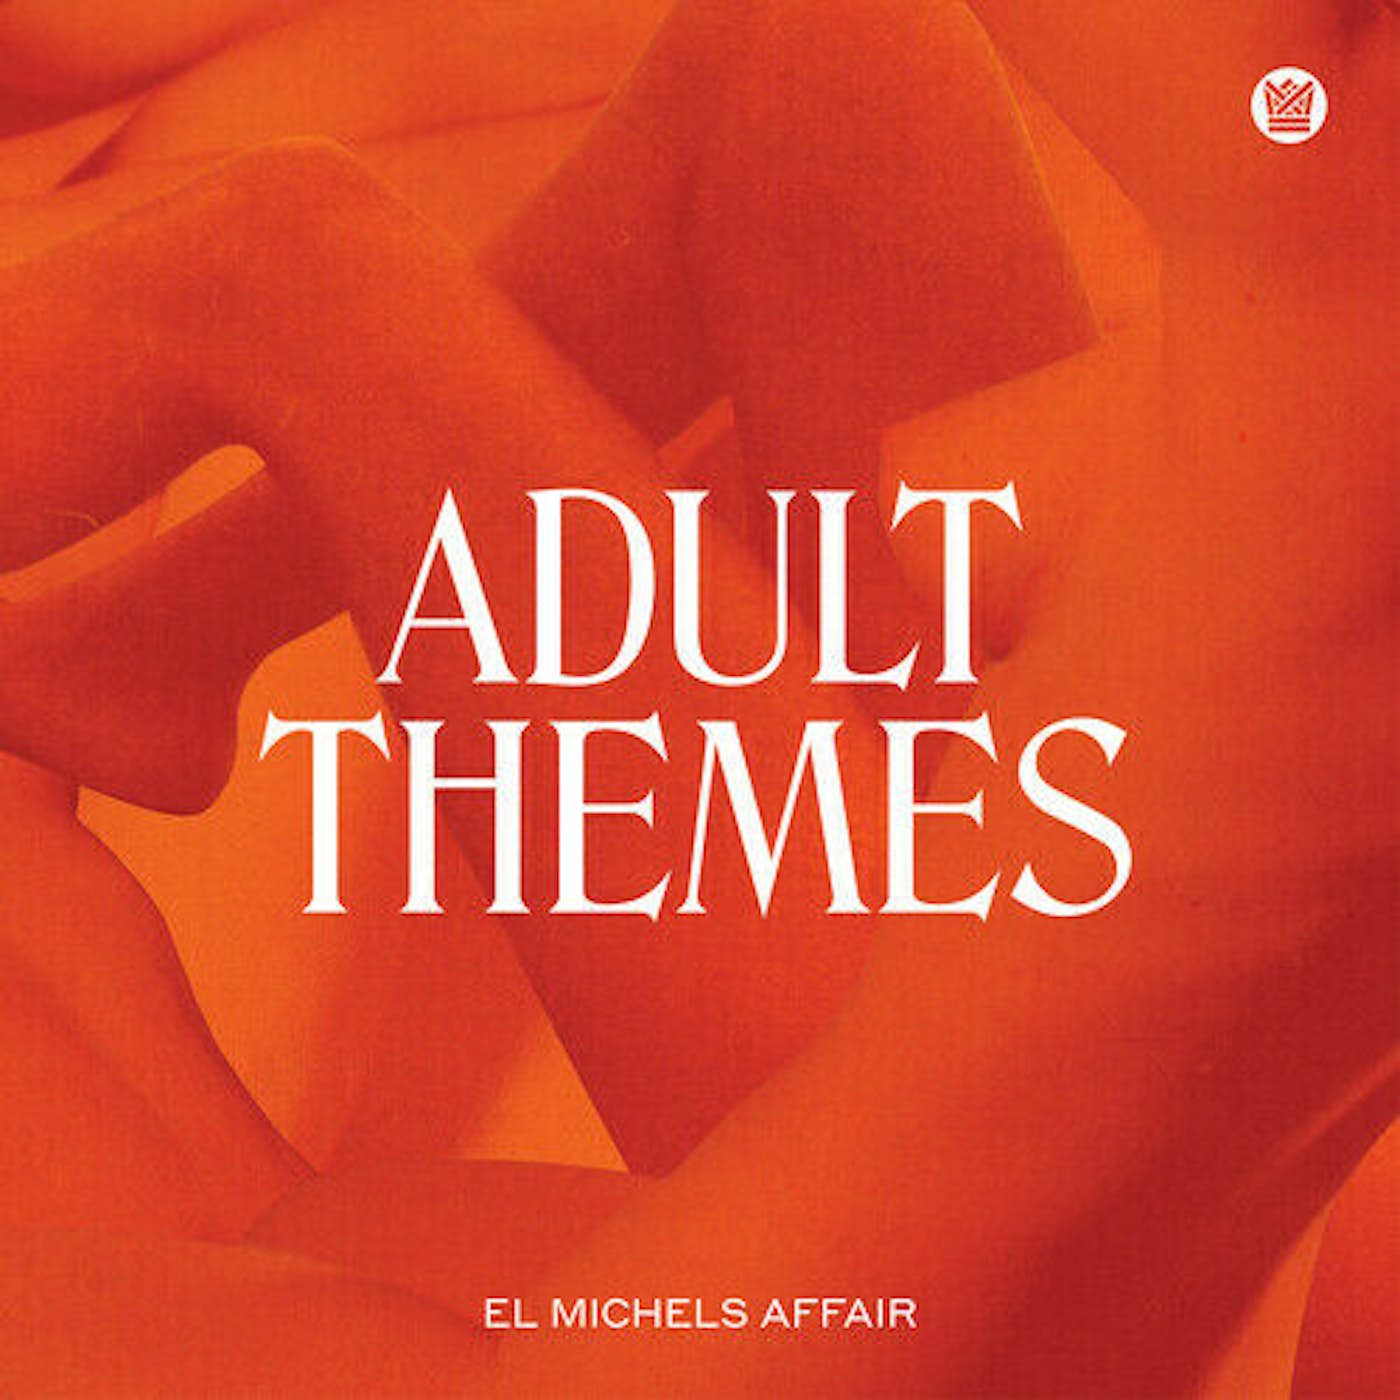 El Michels Affair ADULT THEMES (COLOR VINYL) Vinyl Record